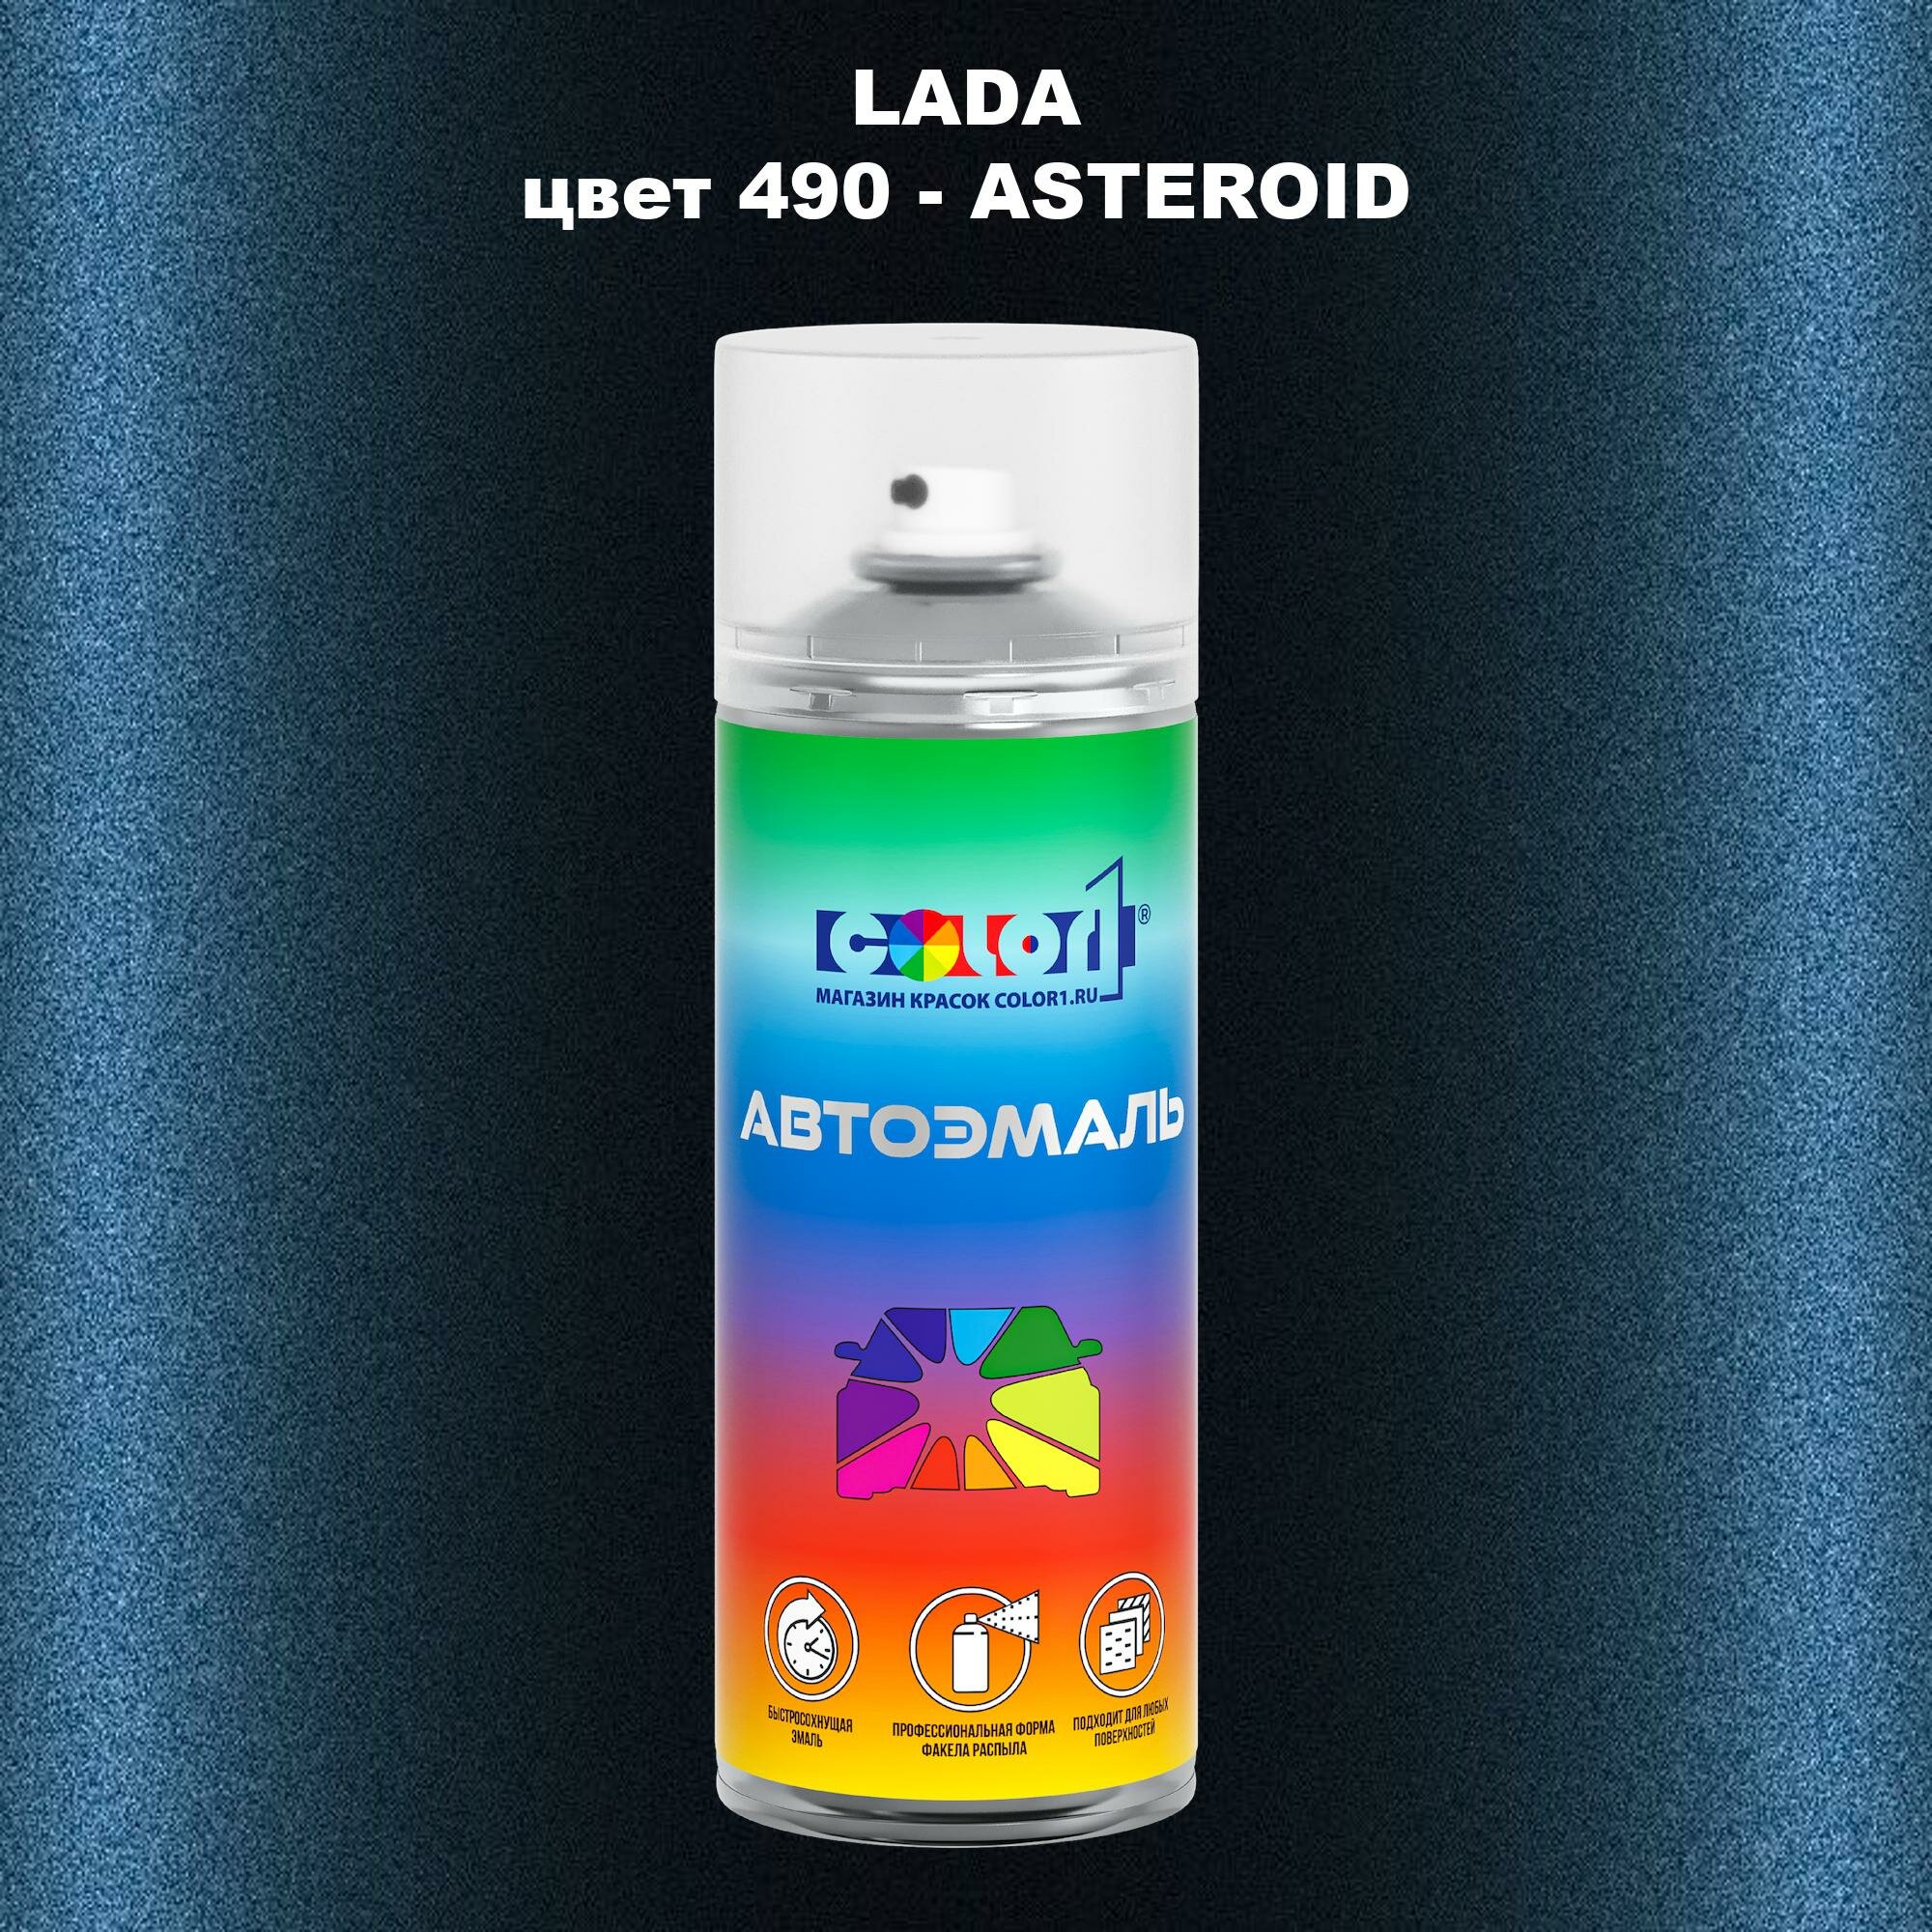 Аэрозольная краска COLOR1 для LADA, цвет 490 - ASTEROID